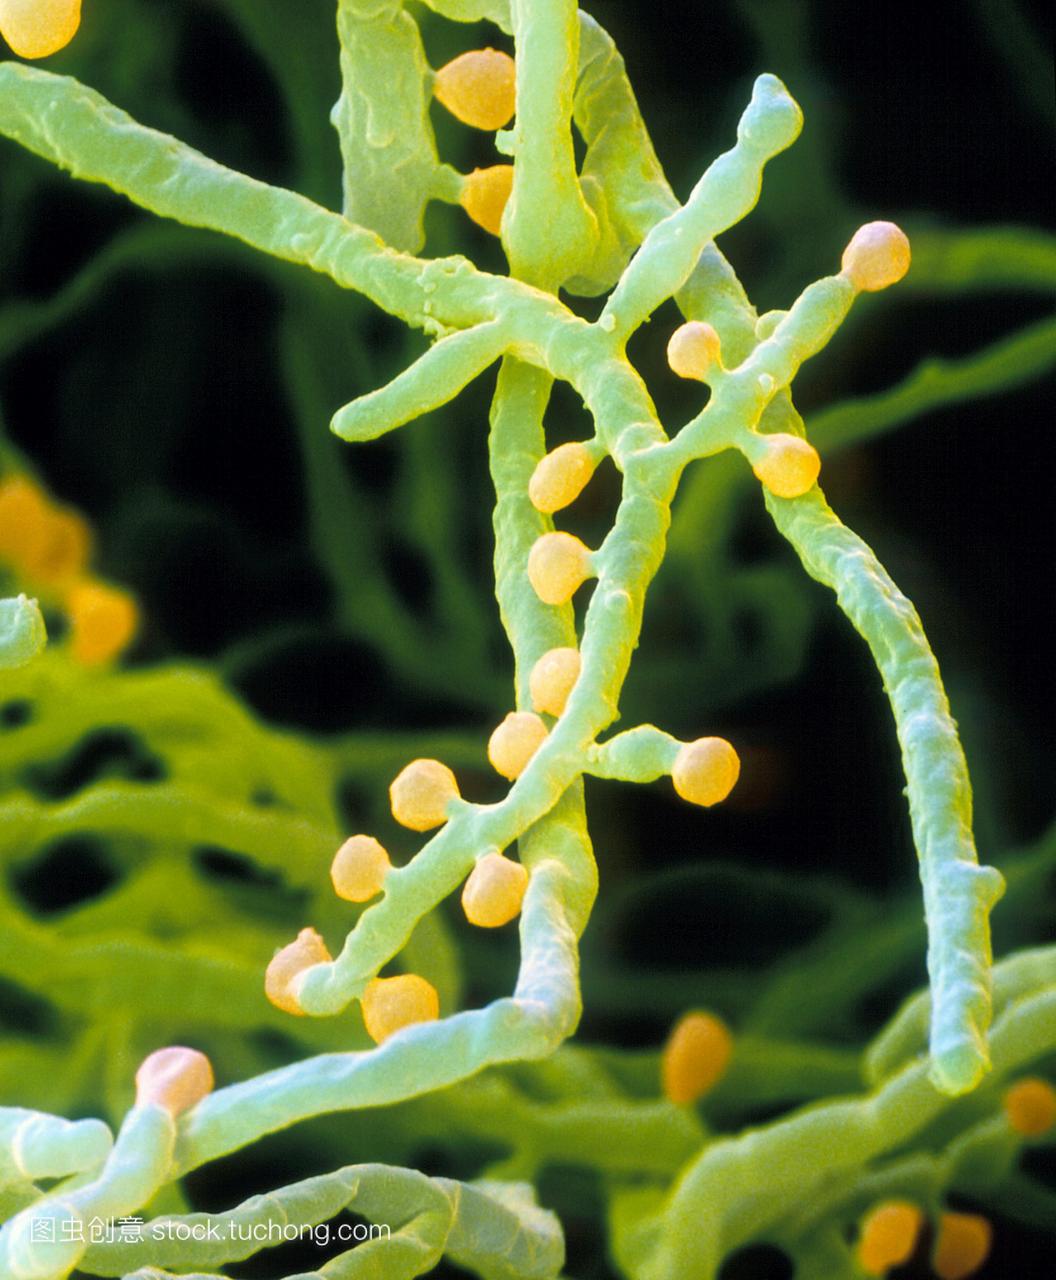 ytes。彩色扫描电子显微摄影毛癣菌属的真菌m